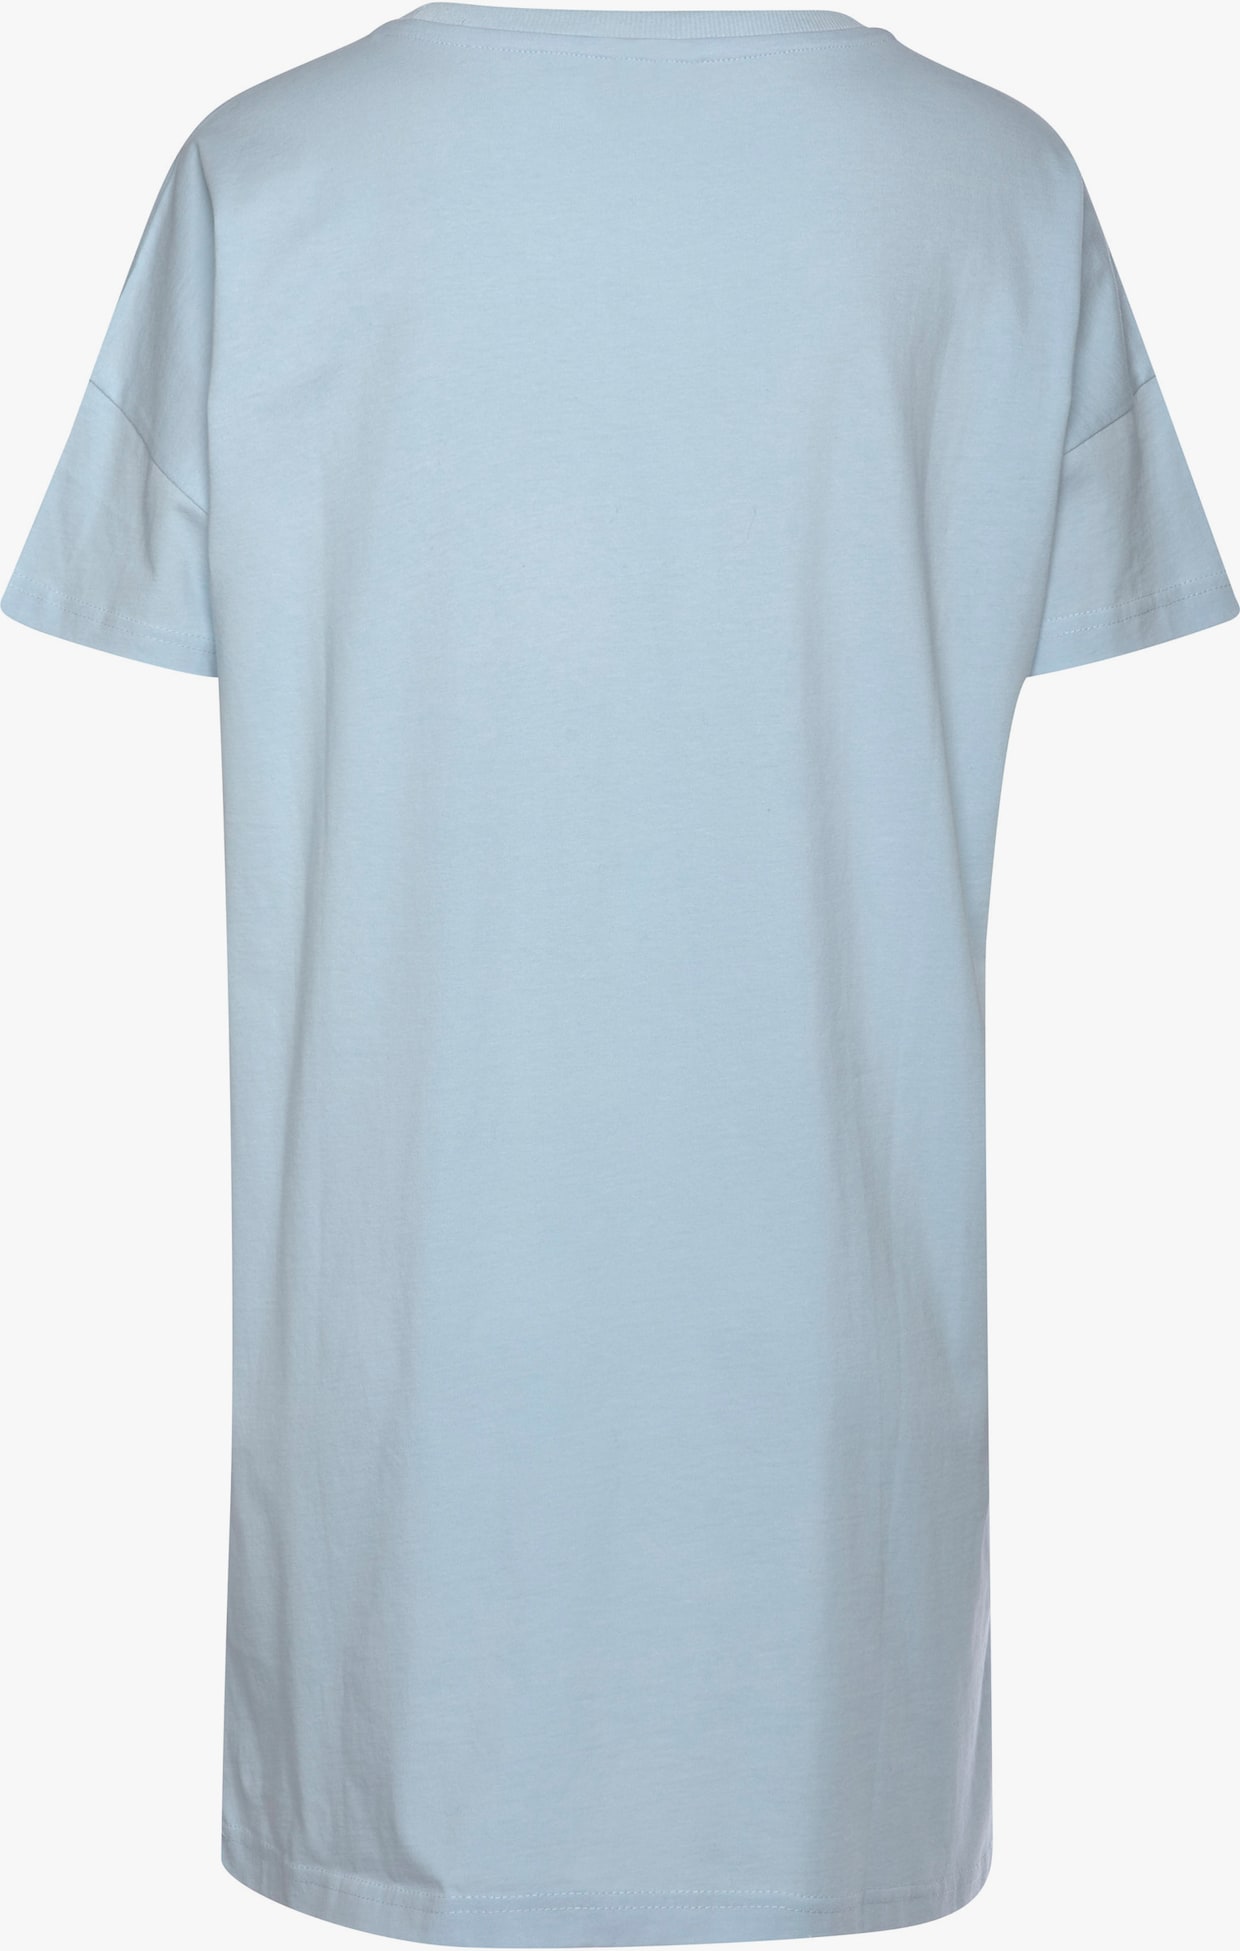 Vivance Dreams T-shirt de nuit - bordeaux, bleu clair